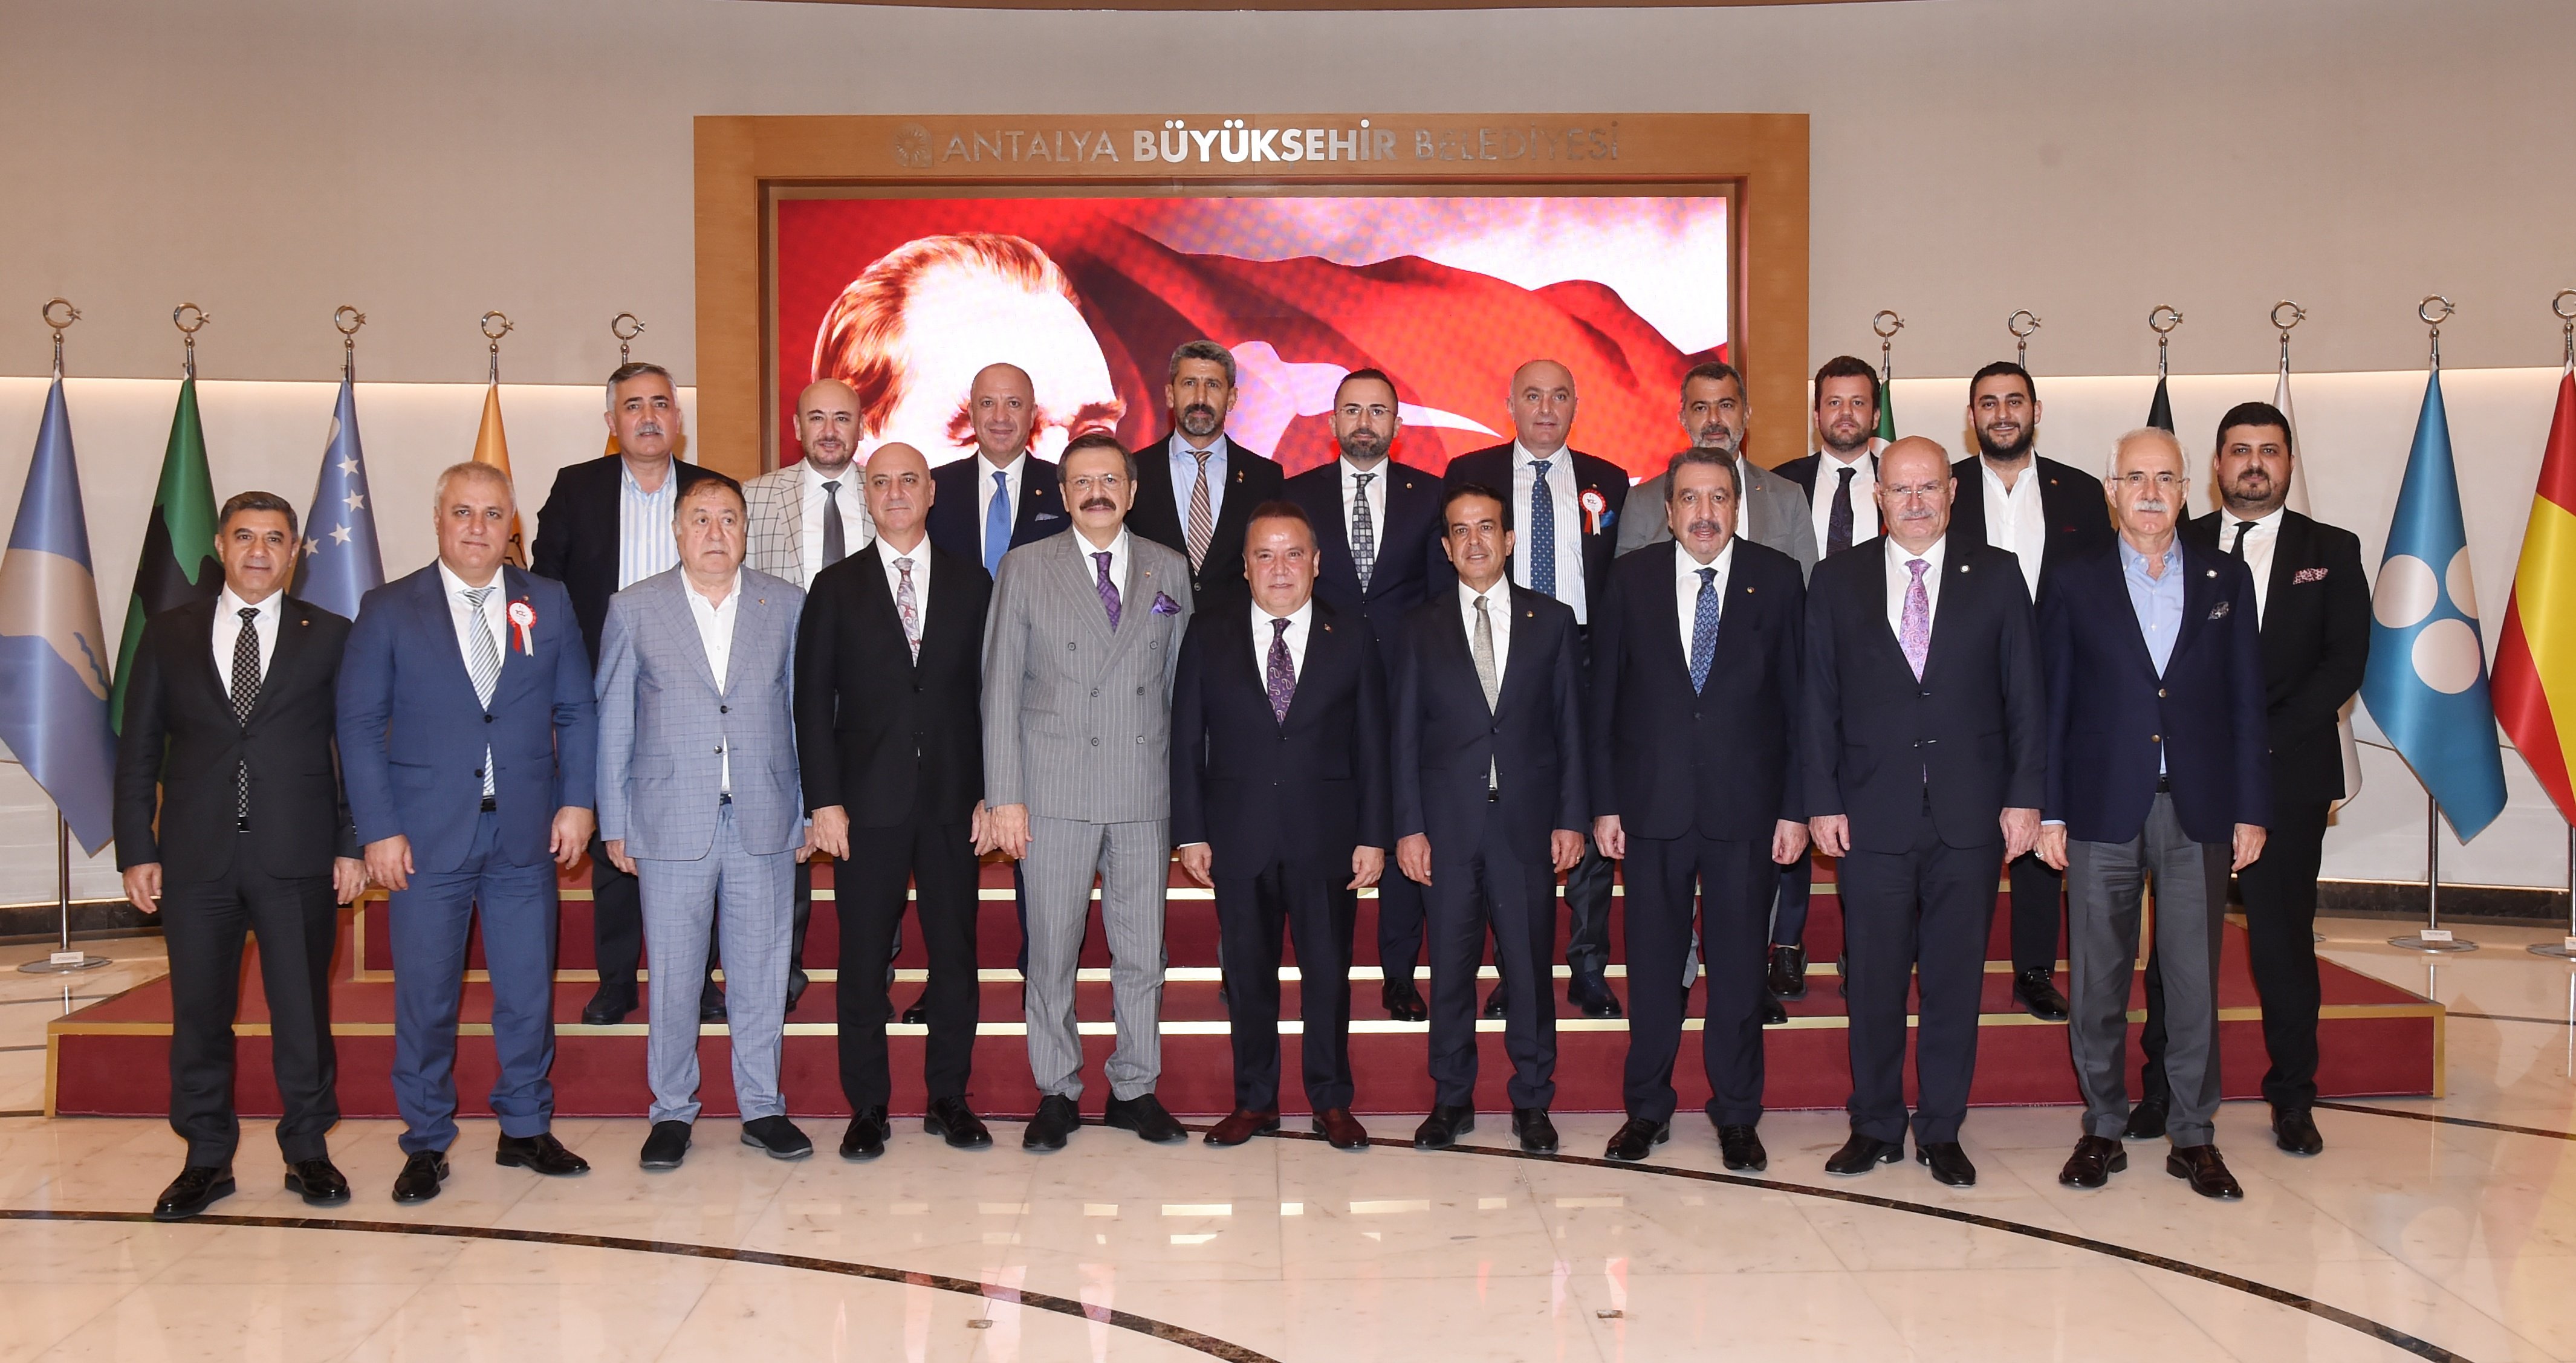 TOBB Yönetim Kurulu Üyesi ve Odamız Başkanı Hakan ÜLKEN, TOBB Başkanımız Sn. M. Rifat HİSARCIKLIOĞLU başkanlığında gerçekleştirilen Antalya Büyükşehir Belediyesi ziyaretine katılım sağladı.